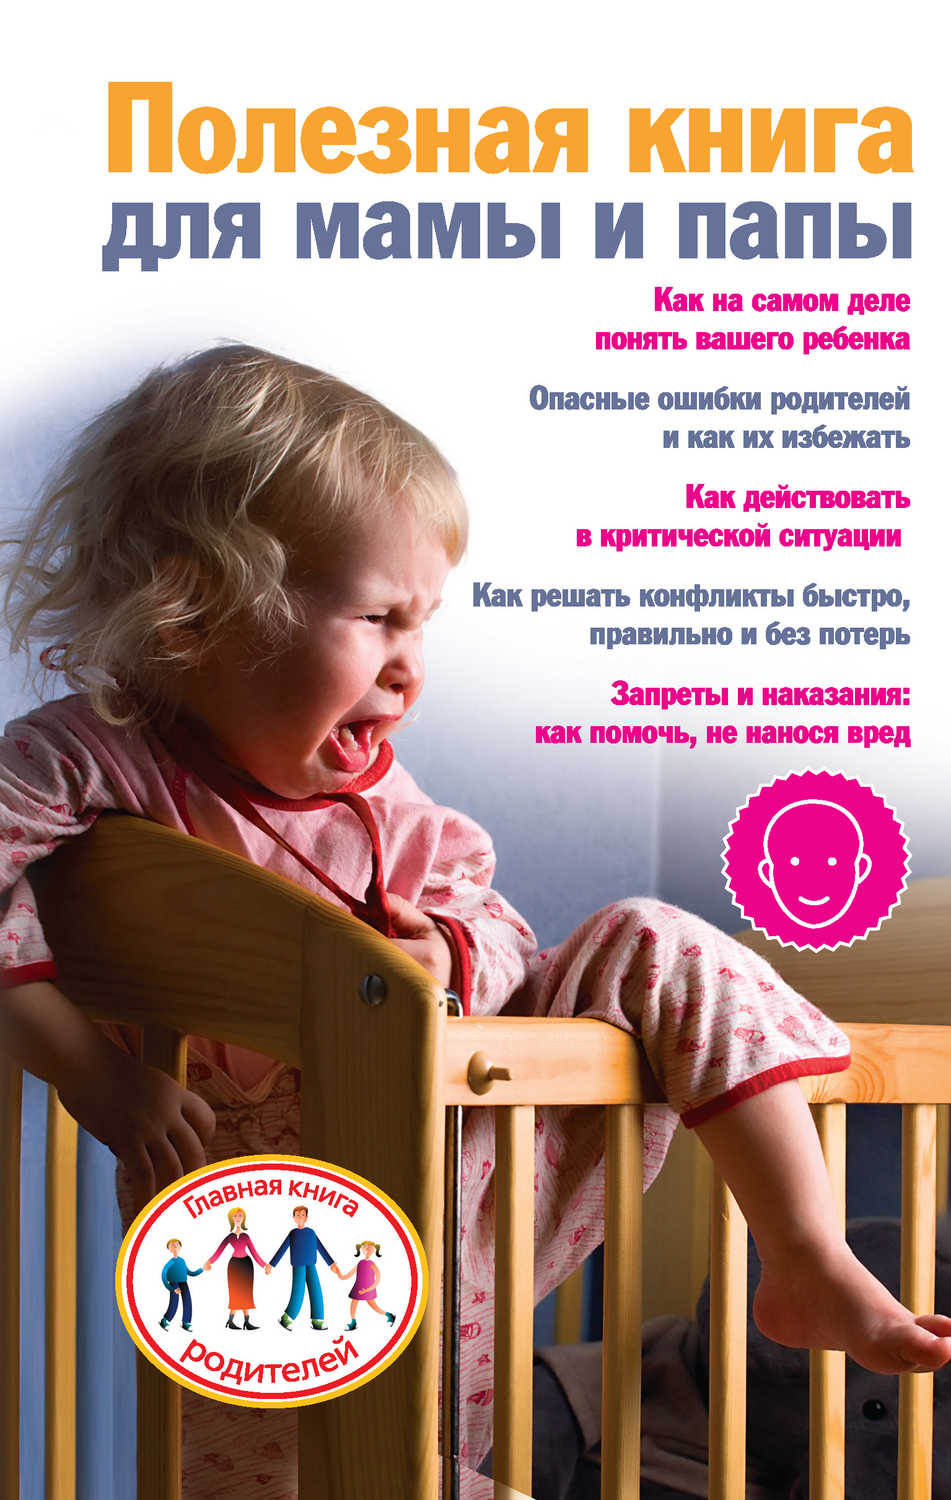 Скачкова Ксения - «Полезная книга для мамы и папы»